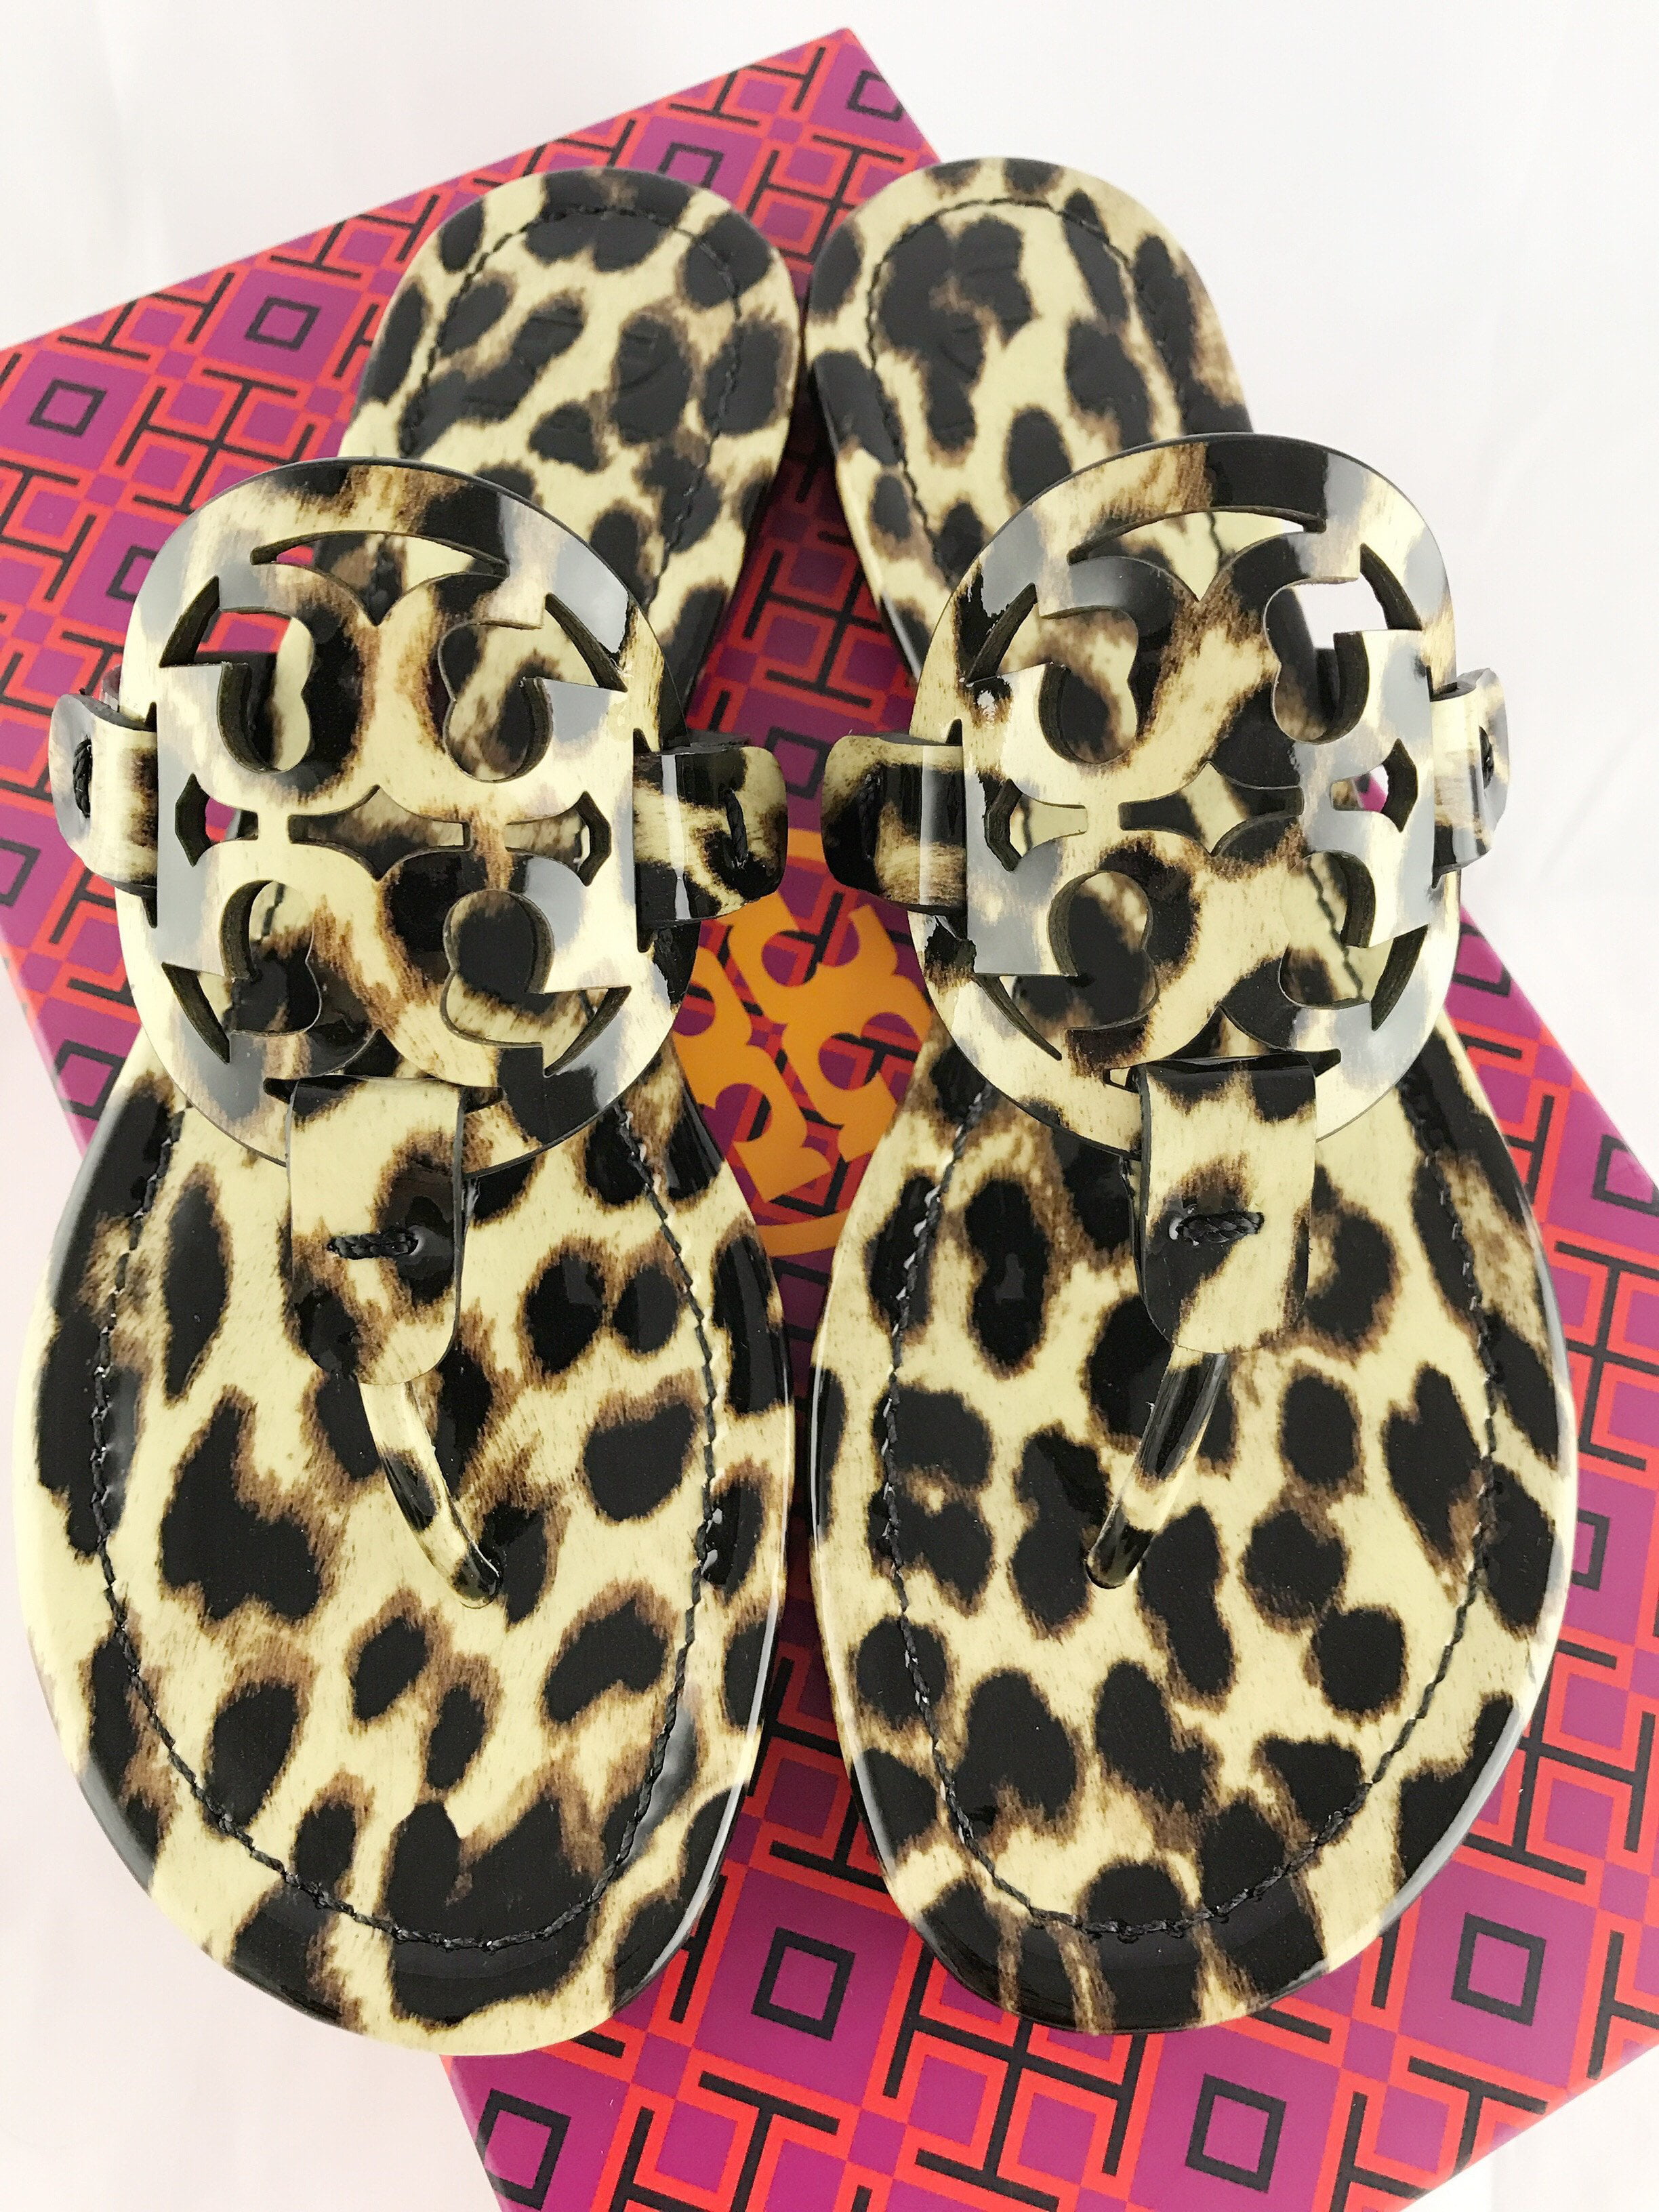 tory burch miller sandals cheetah